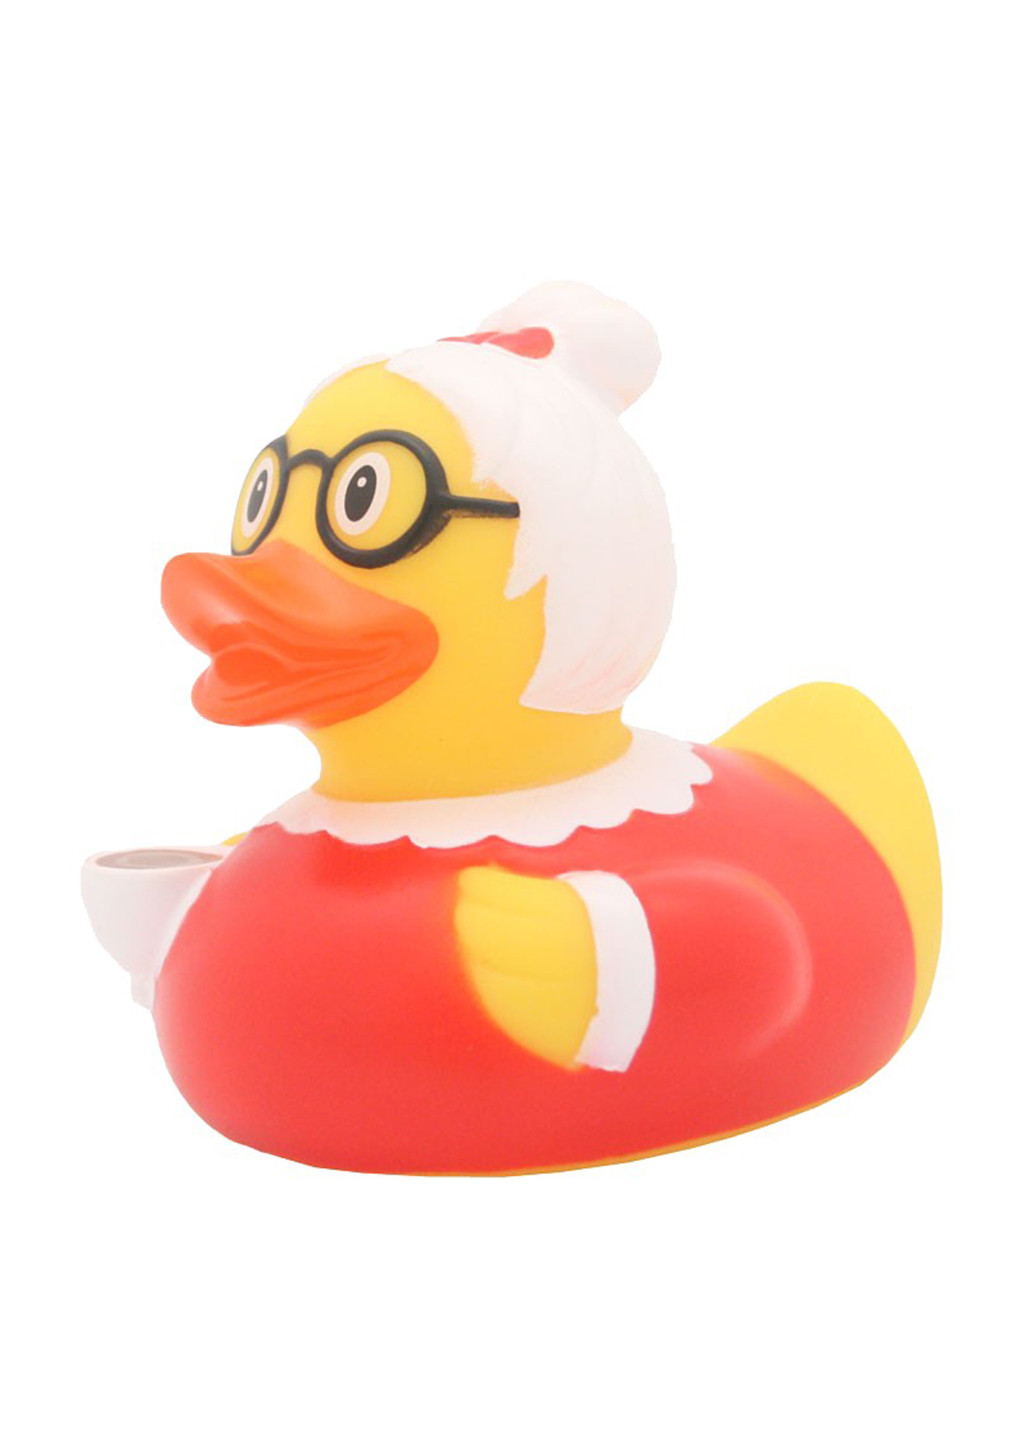 Игрушка для купания Утка Бабушка, 8,5x8,5x7,5 см Funny Ducks (250618768)